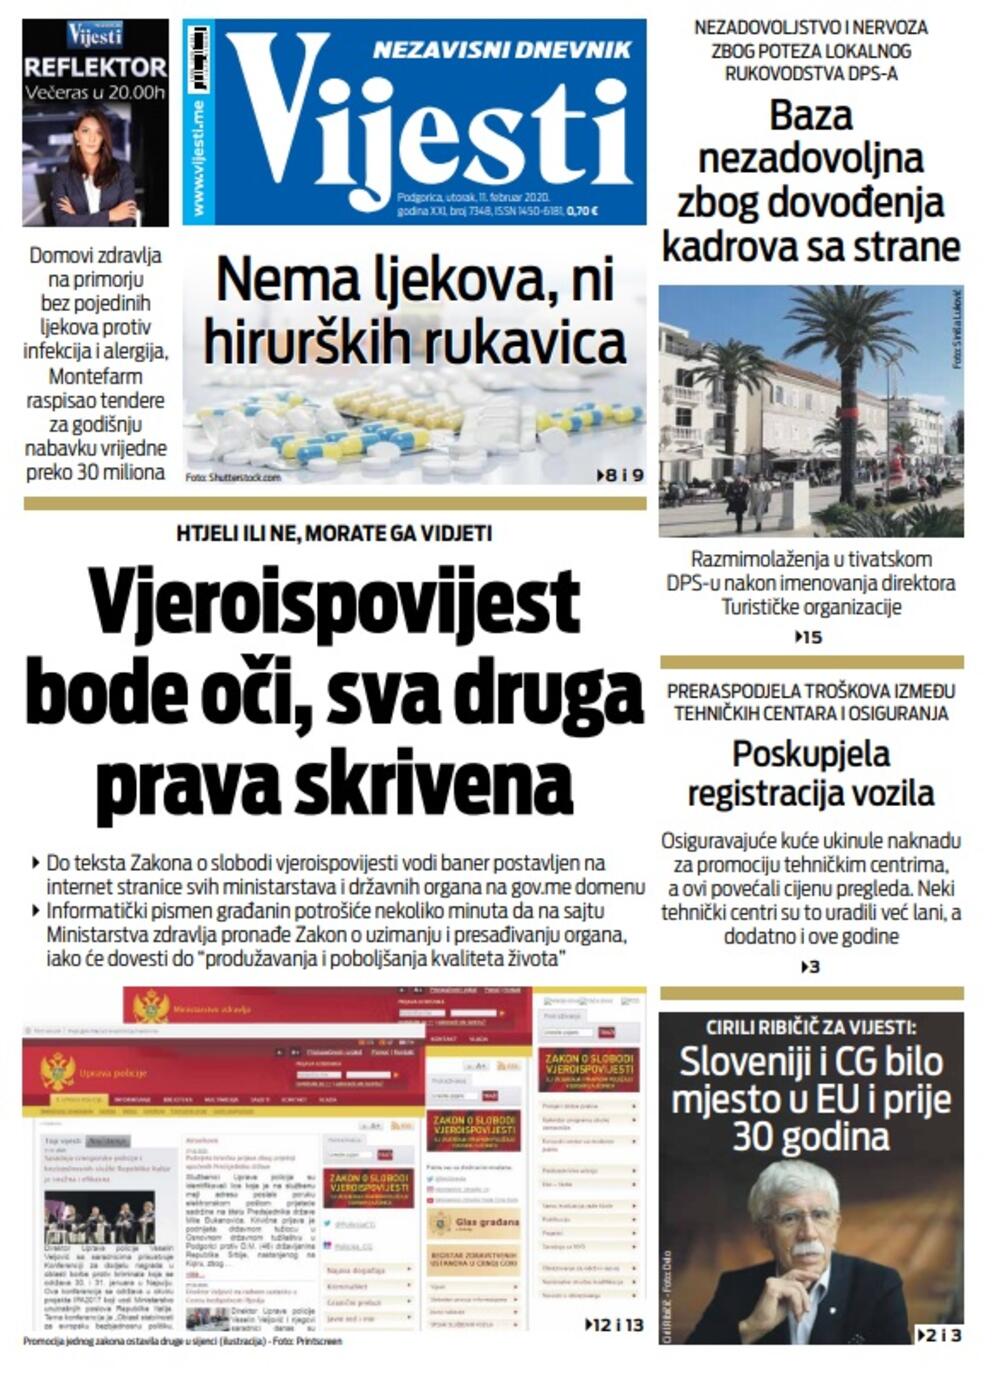 Naslovna strana "Vijesti" za utorak 11. februar 2020. godine